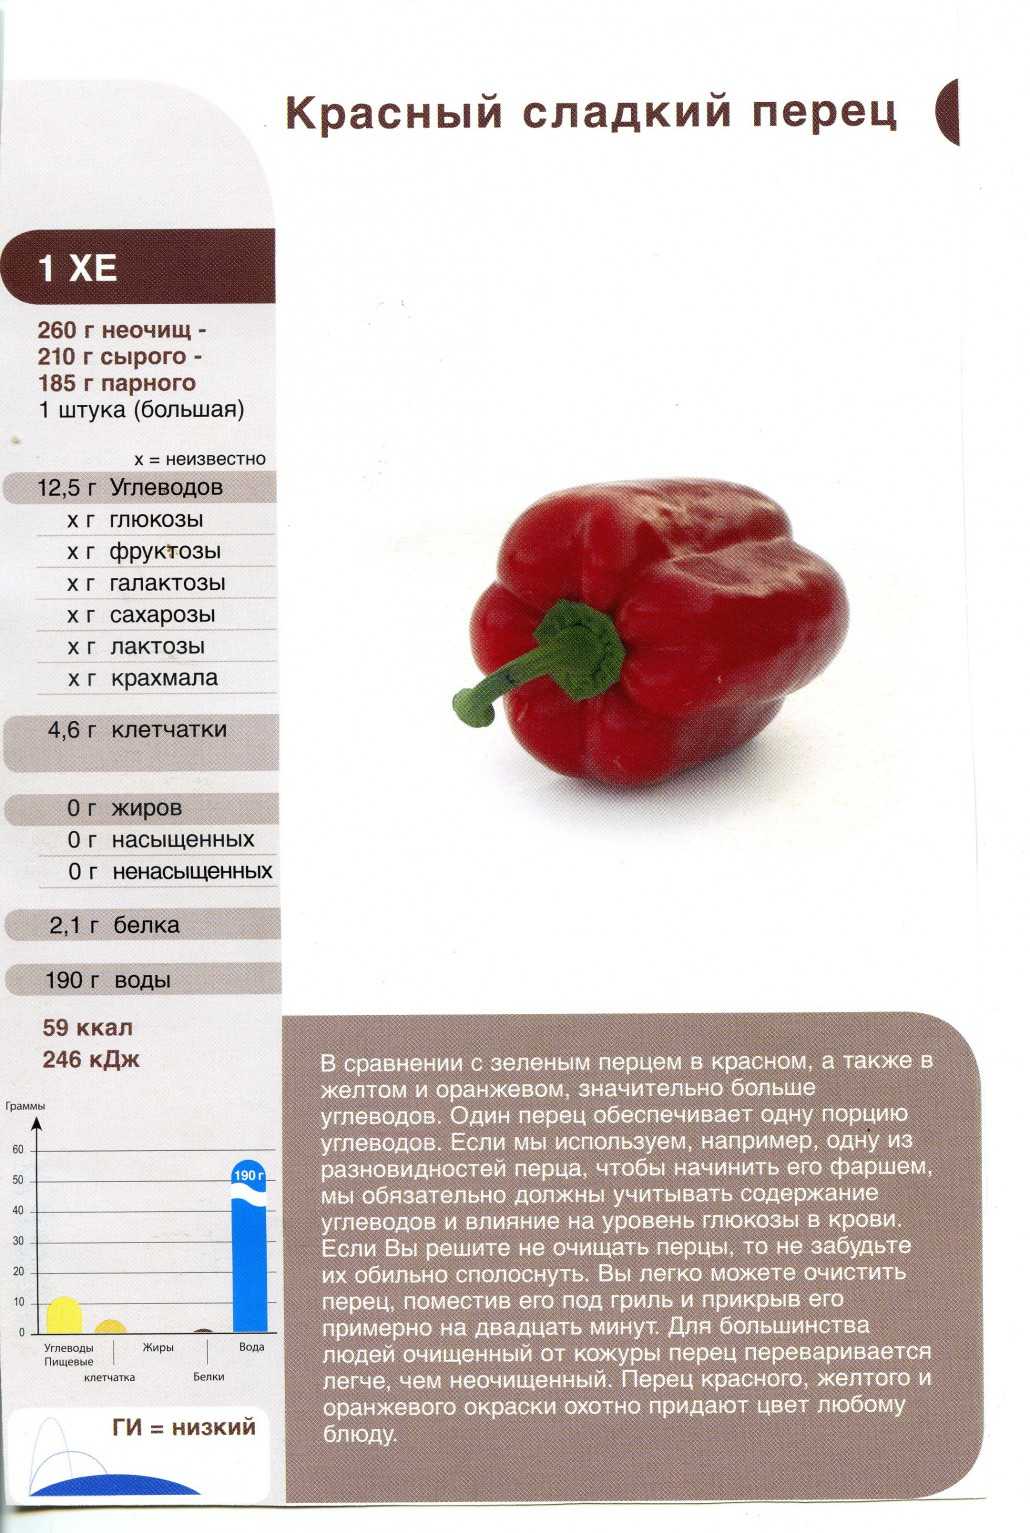 Полезные свойства болгарского перца, возможный вред болгарского перца, состав и калорийность.